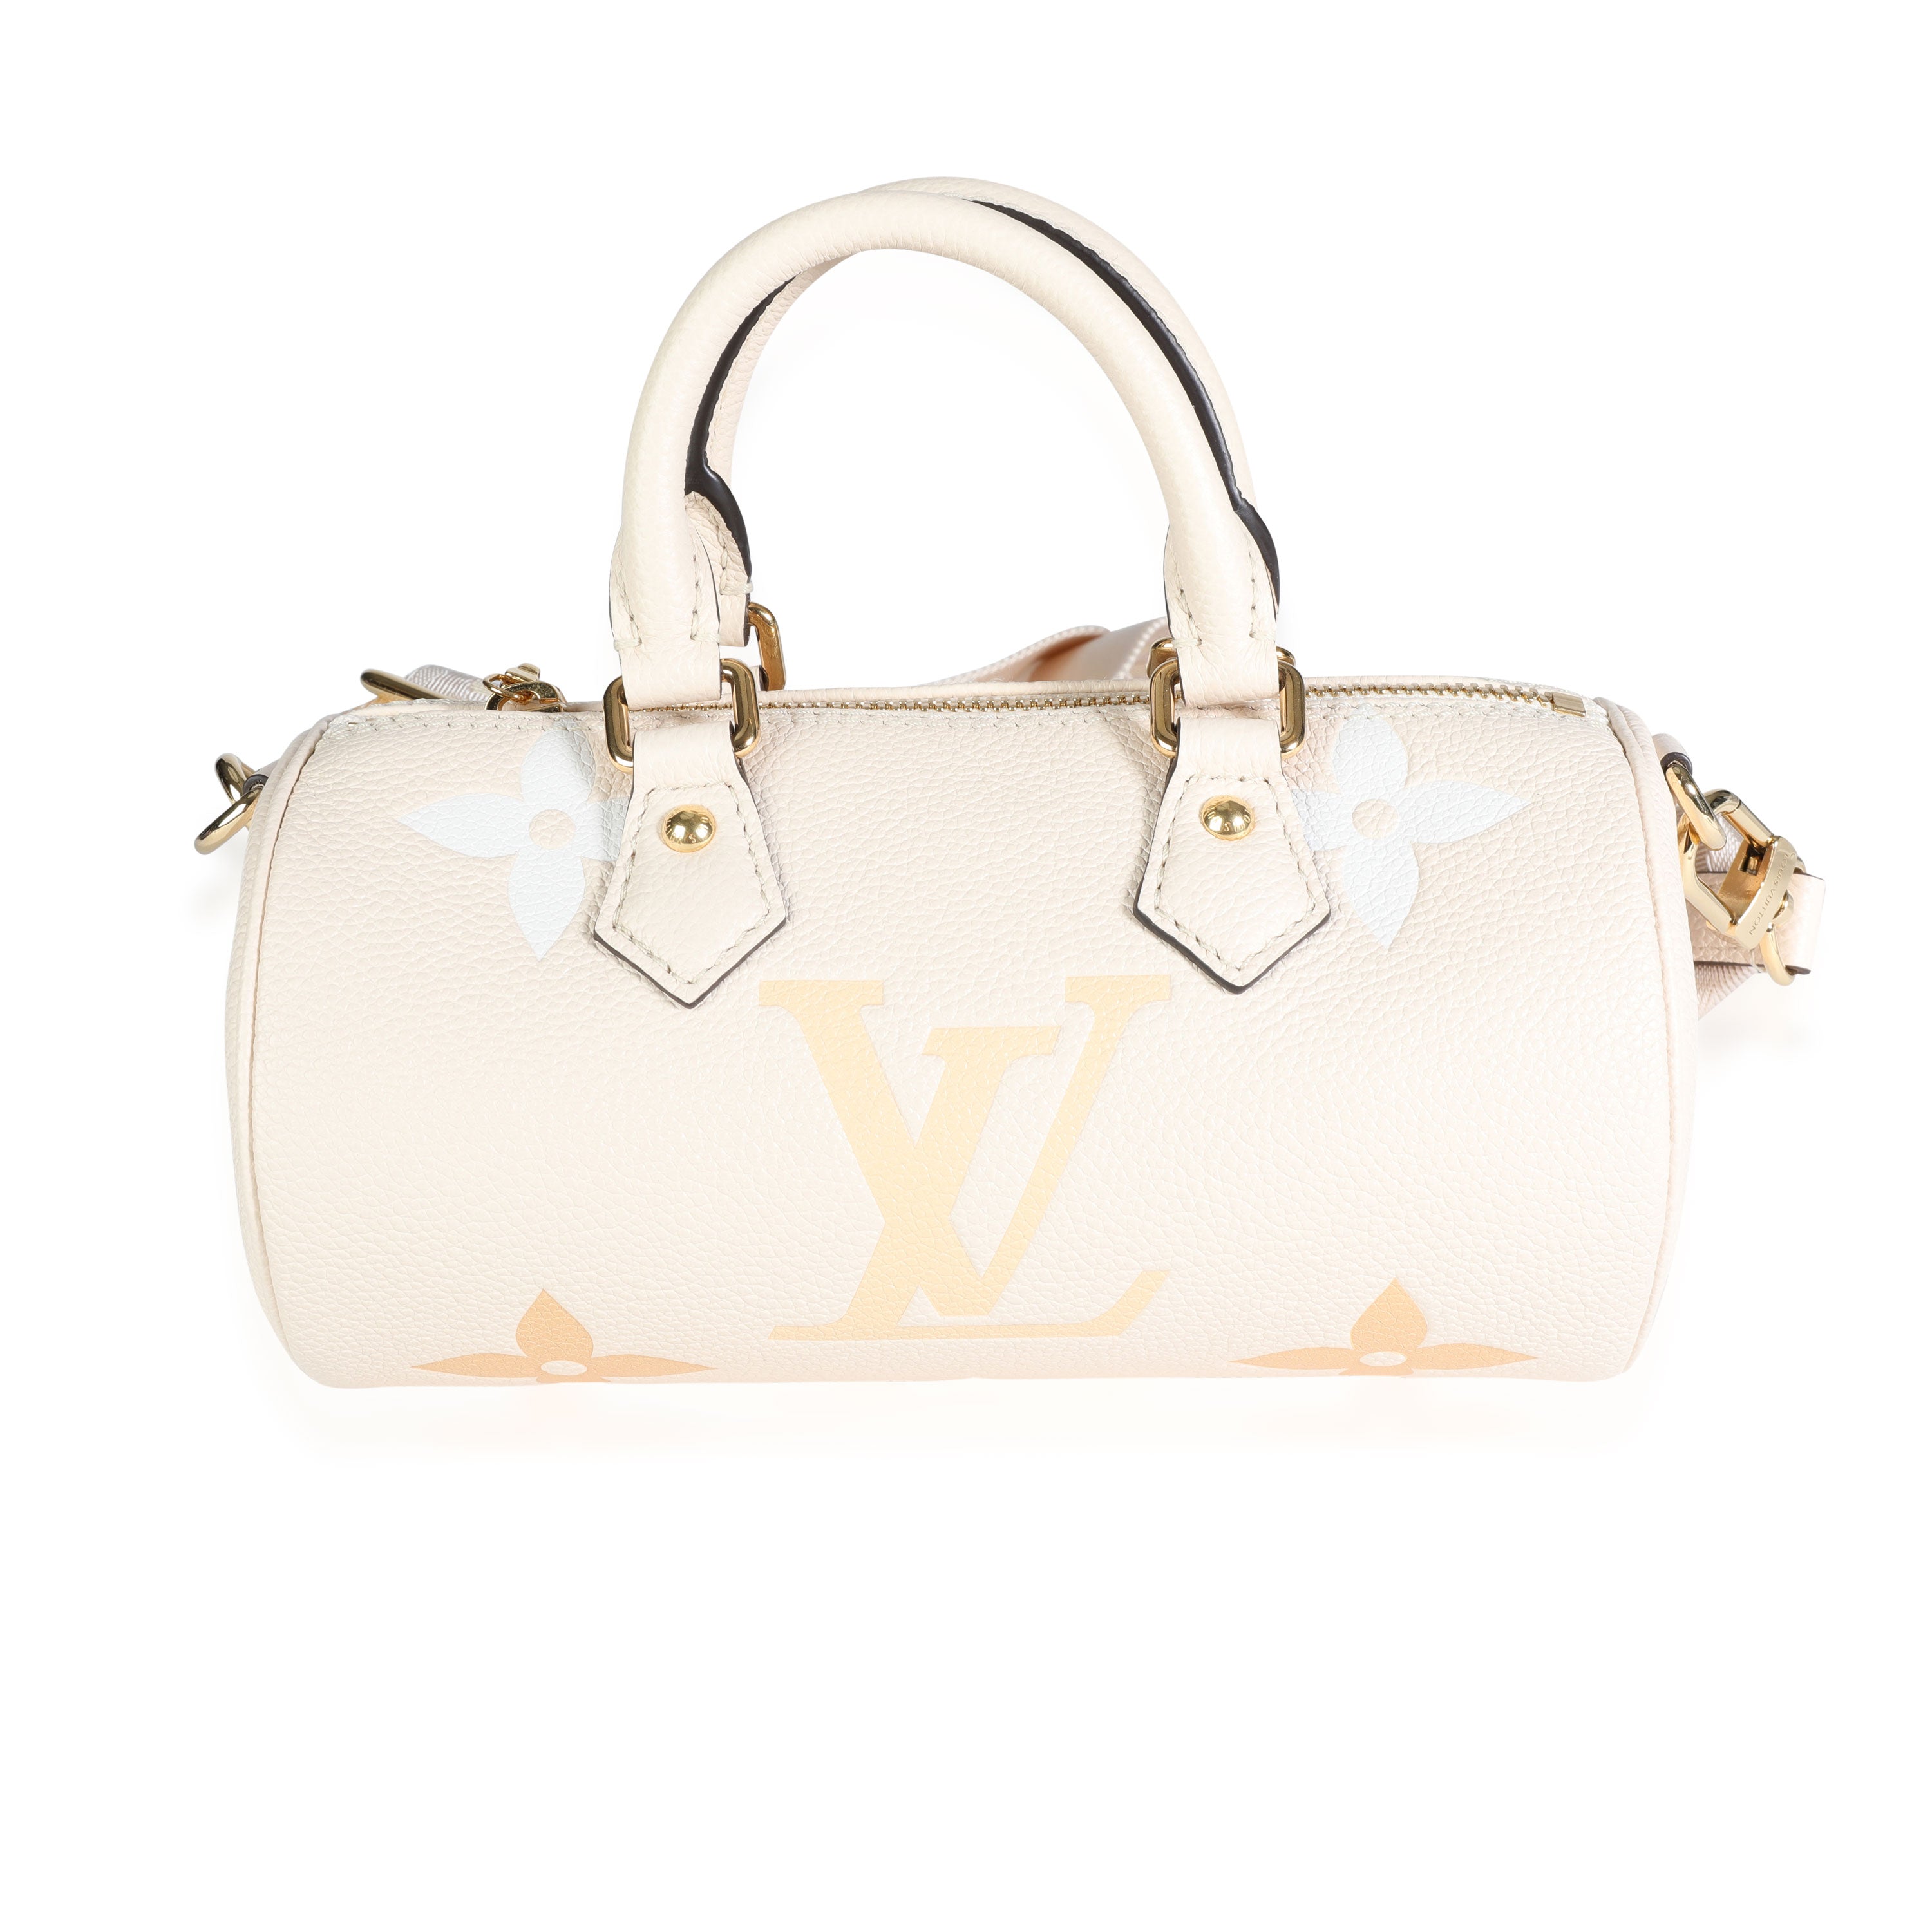 Louis Vuitton Bag for Lauren's - Summers Surprise Cakes